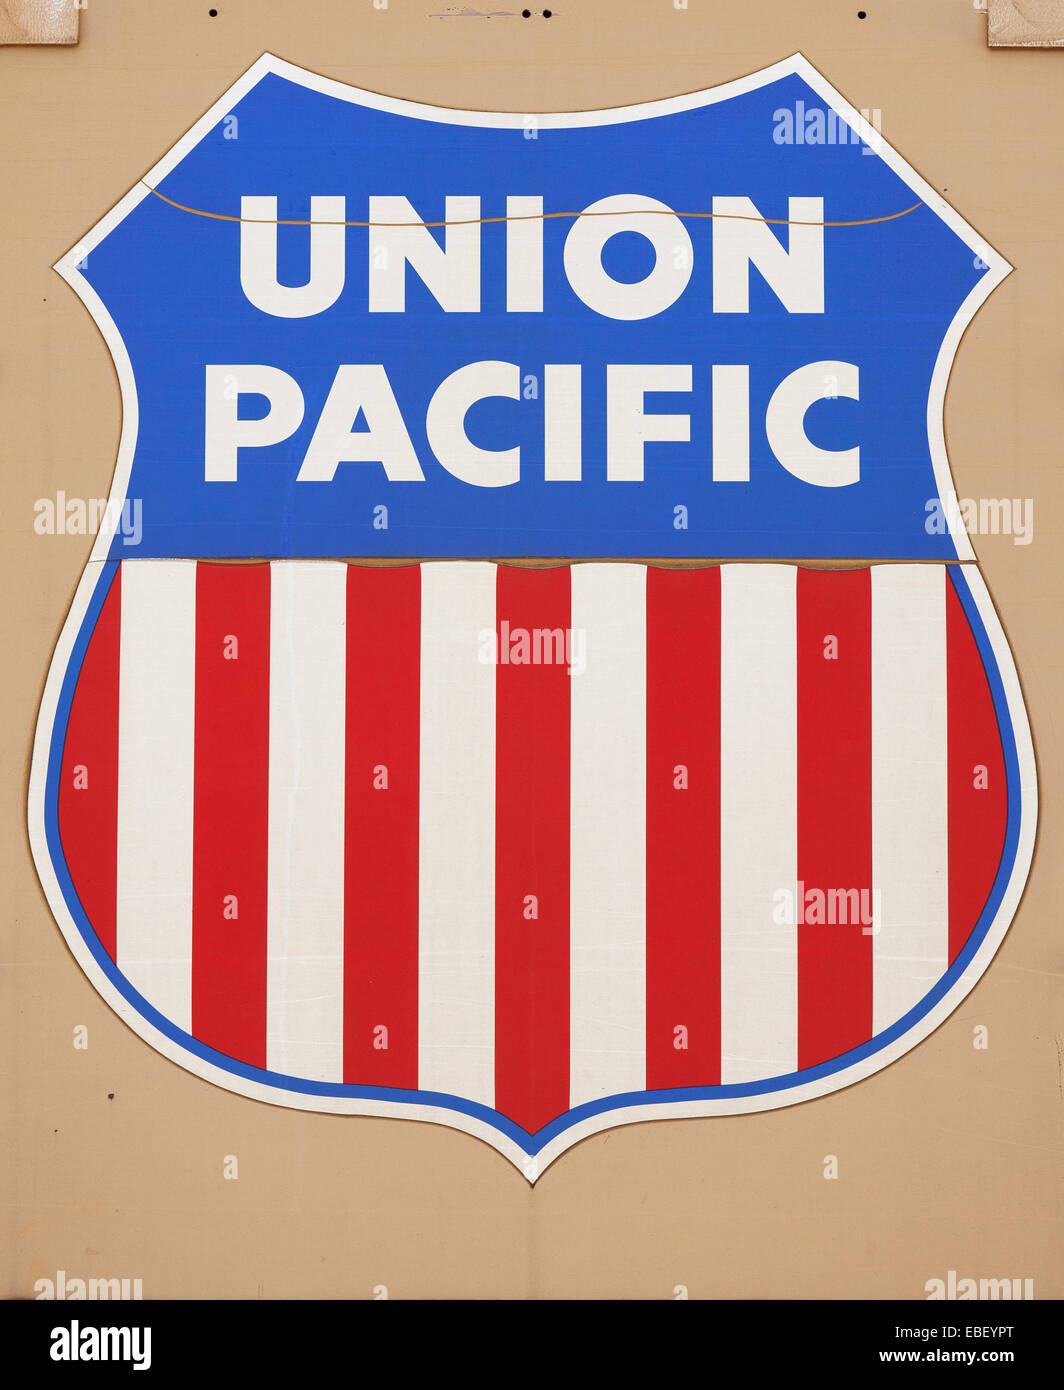 TRURO, Canada - 19 gennaio 2011: Union Pacific nolo auto segno. Union Pacific è una ferrovia merci operano in 23 stati. Foto Stock